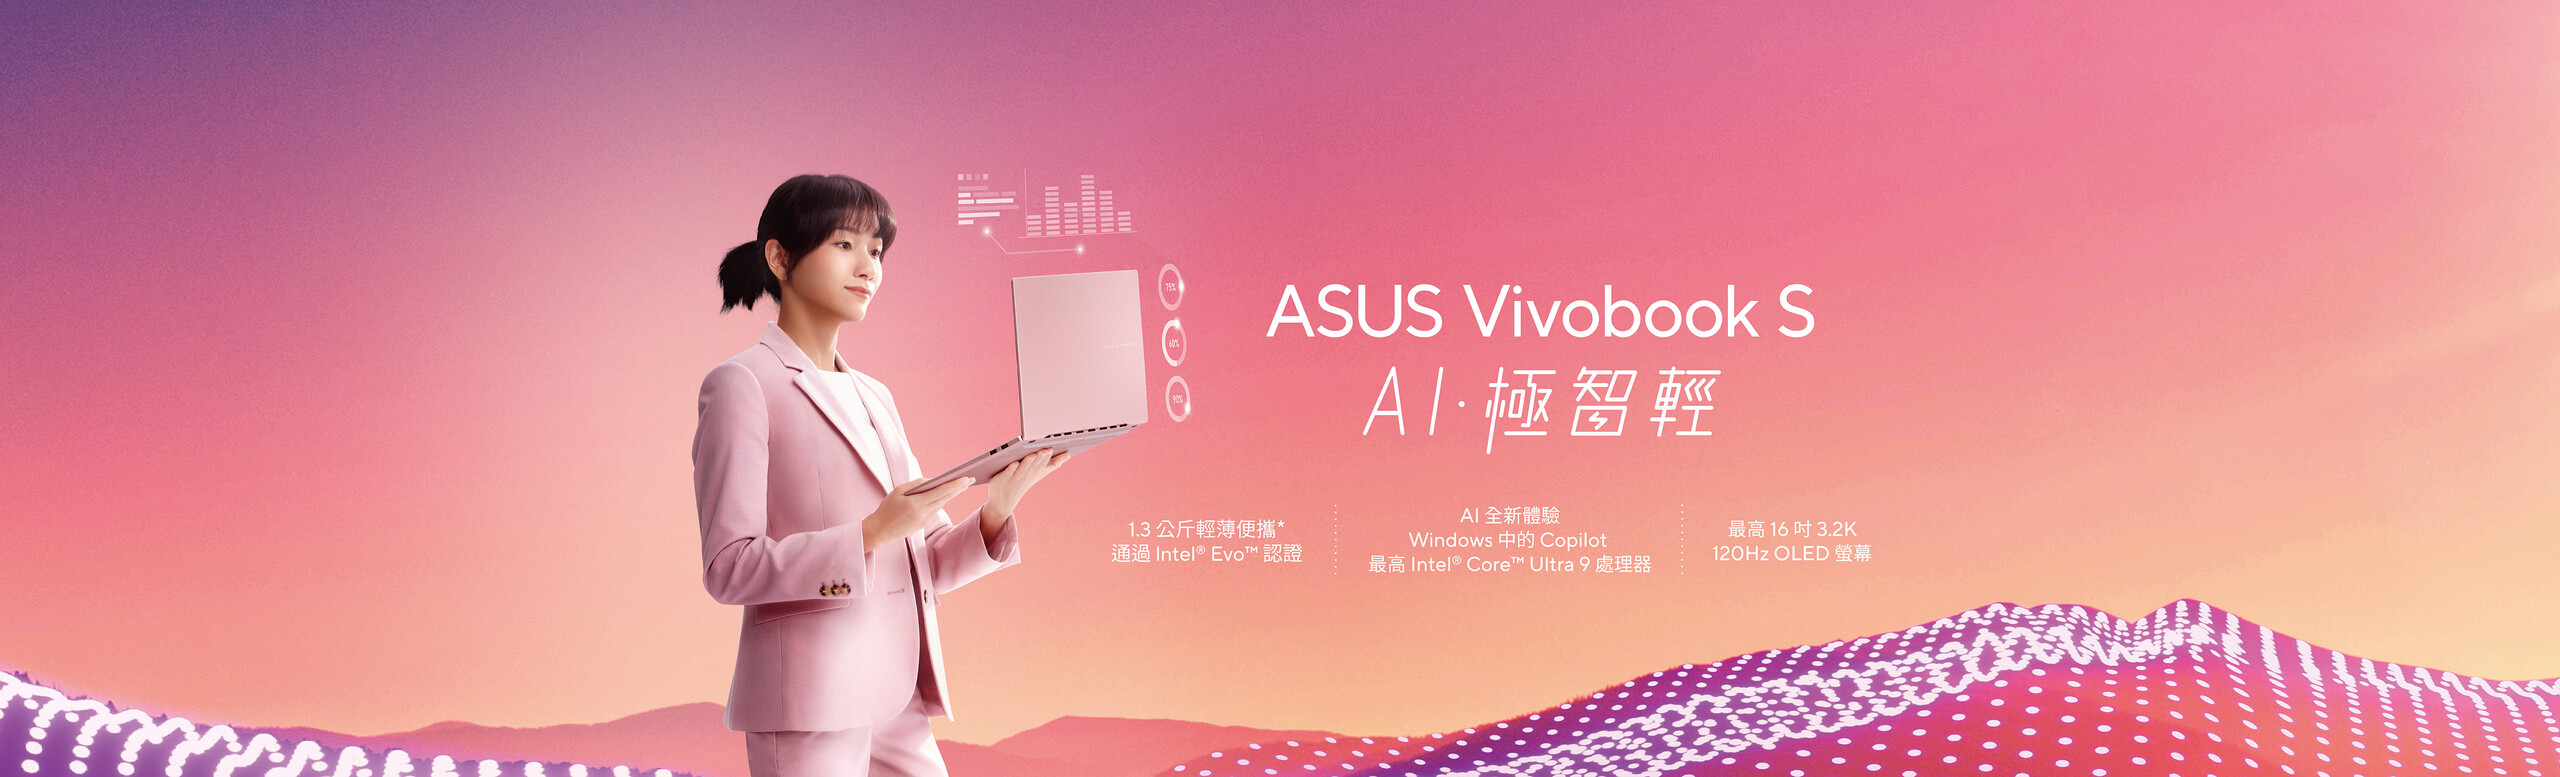 AI PC Vivobook S -AI 極智輕